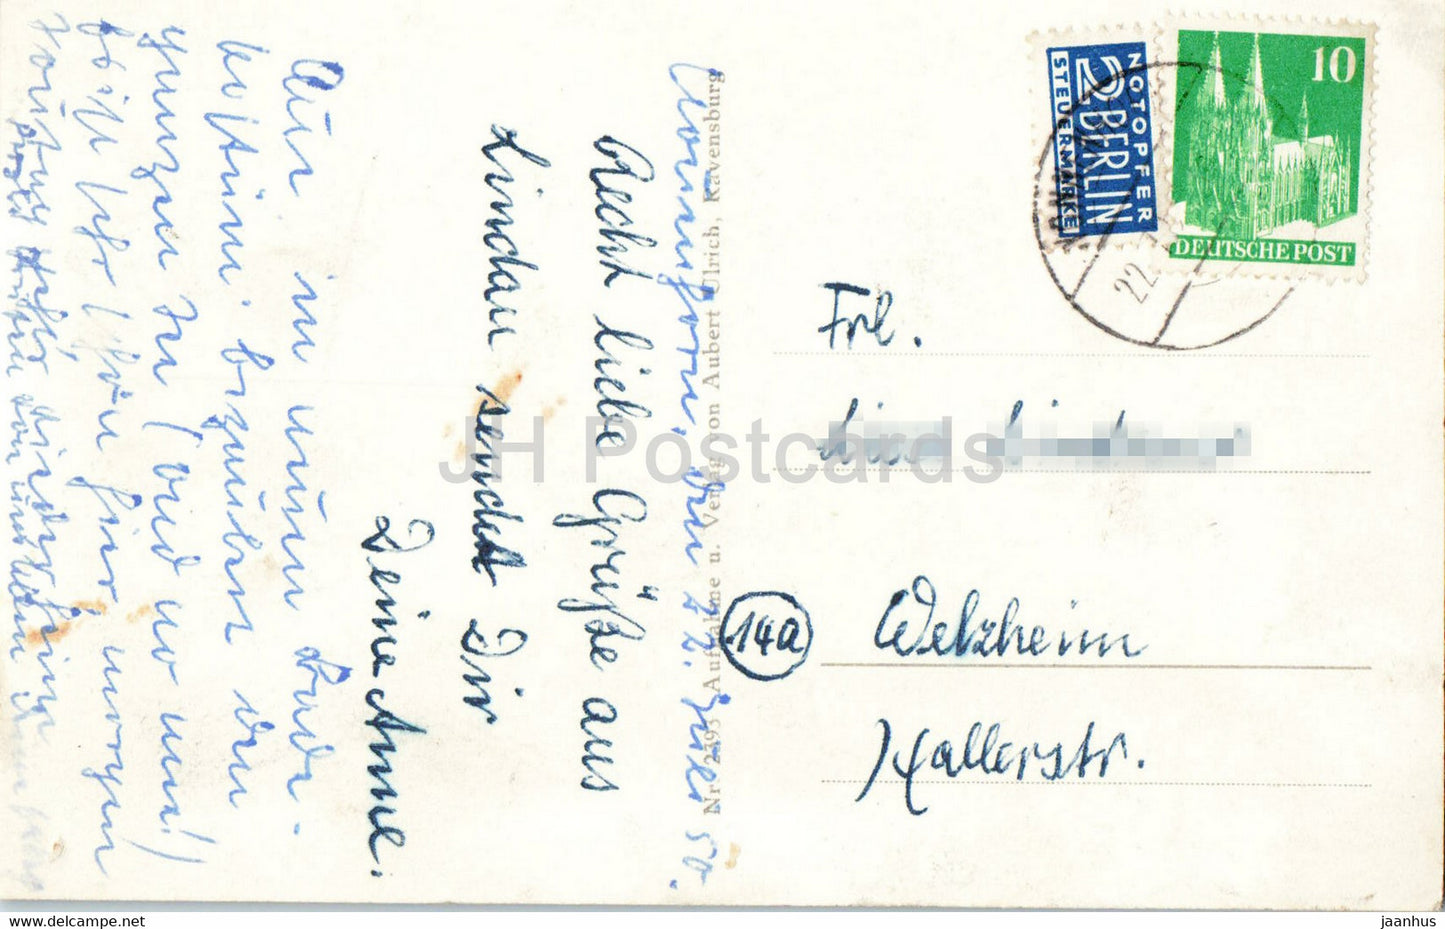 Lindau am Bodensee - Hafendamm - Schiff - Leuchtturm - alte Postkarte - 1950 - Deutschland - gebraucht